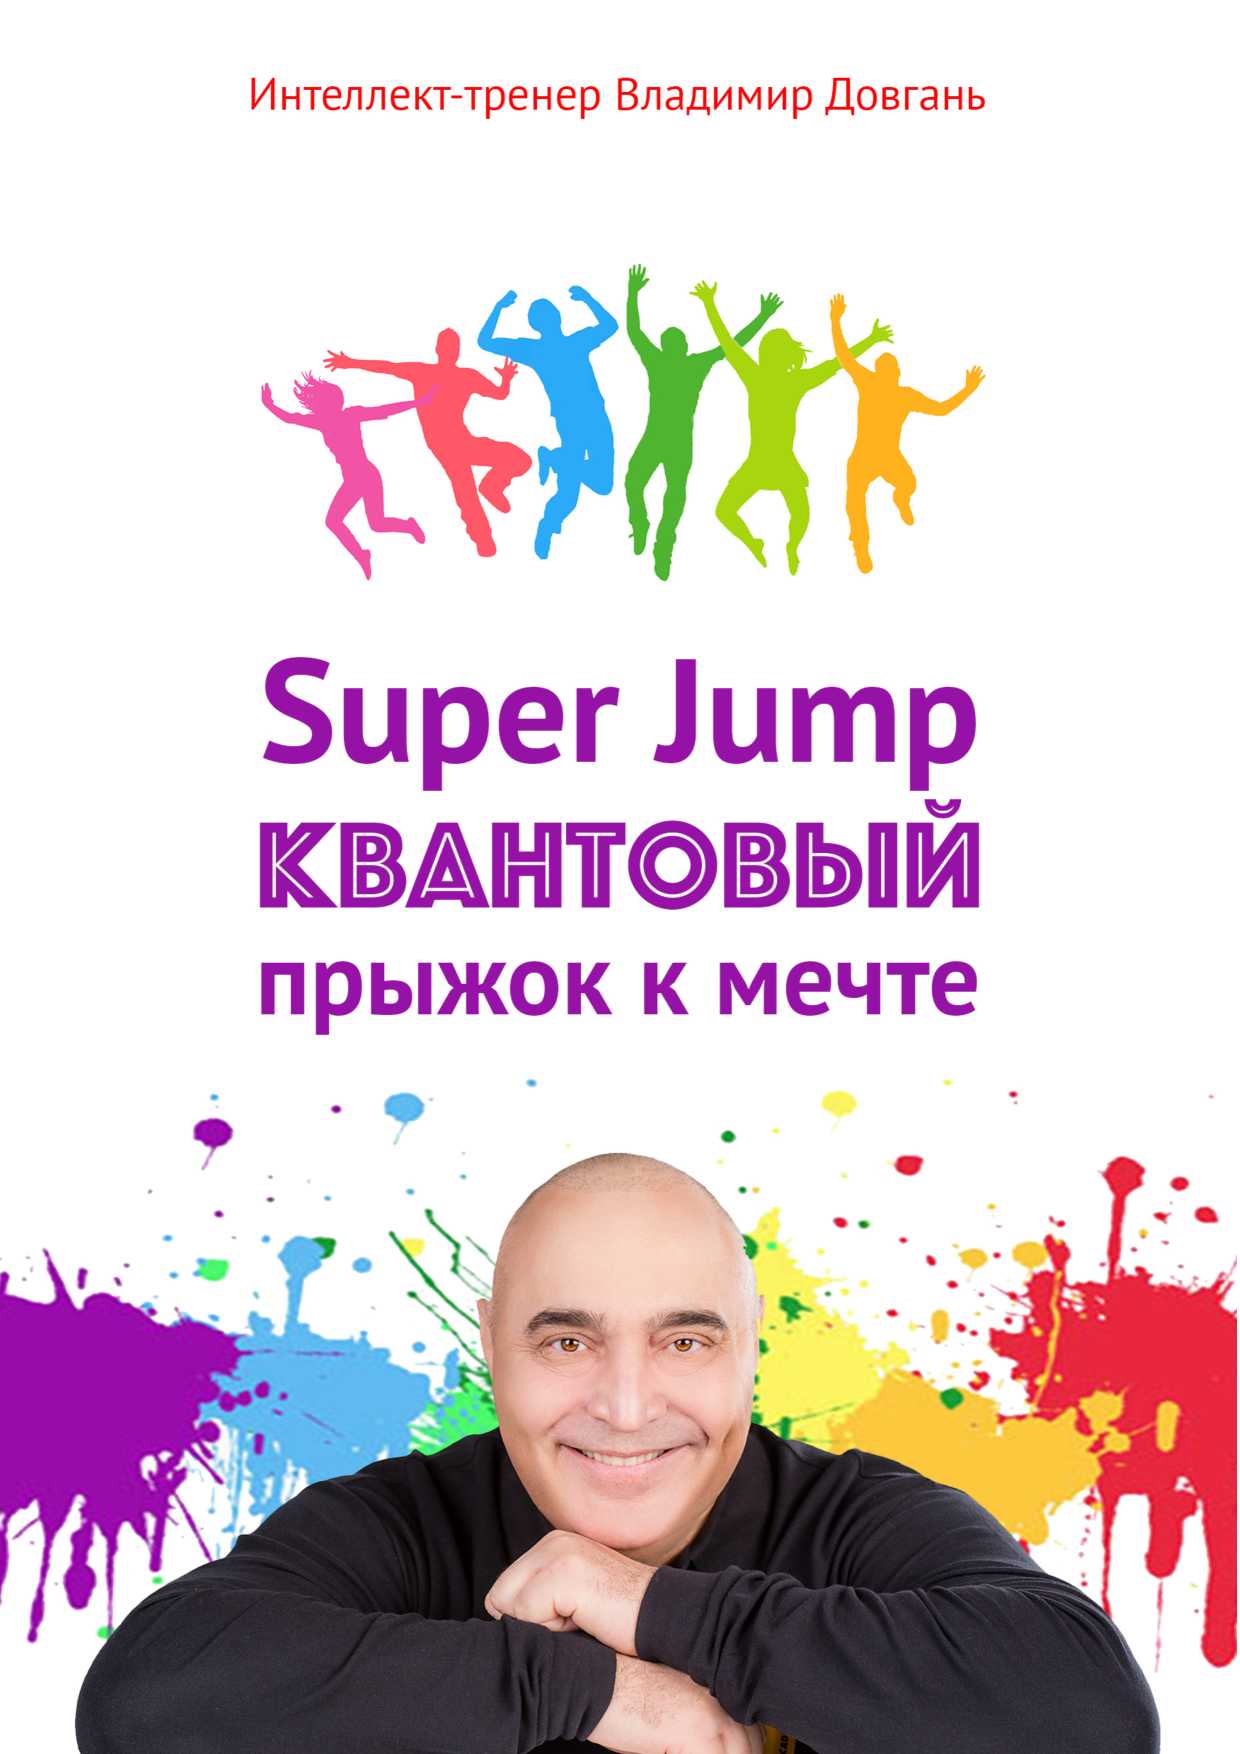 Довгань Владимир - Super Jump. Квантовый прыжок к мечте скачать бесплатно